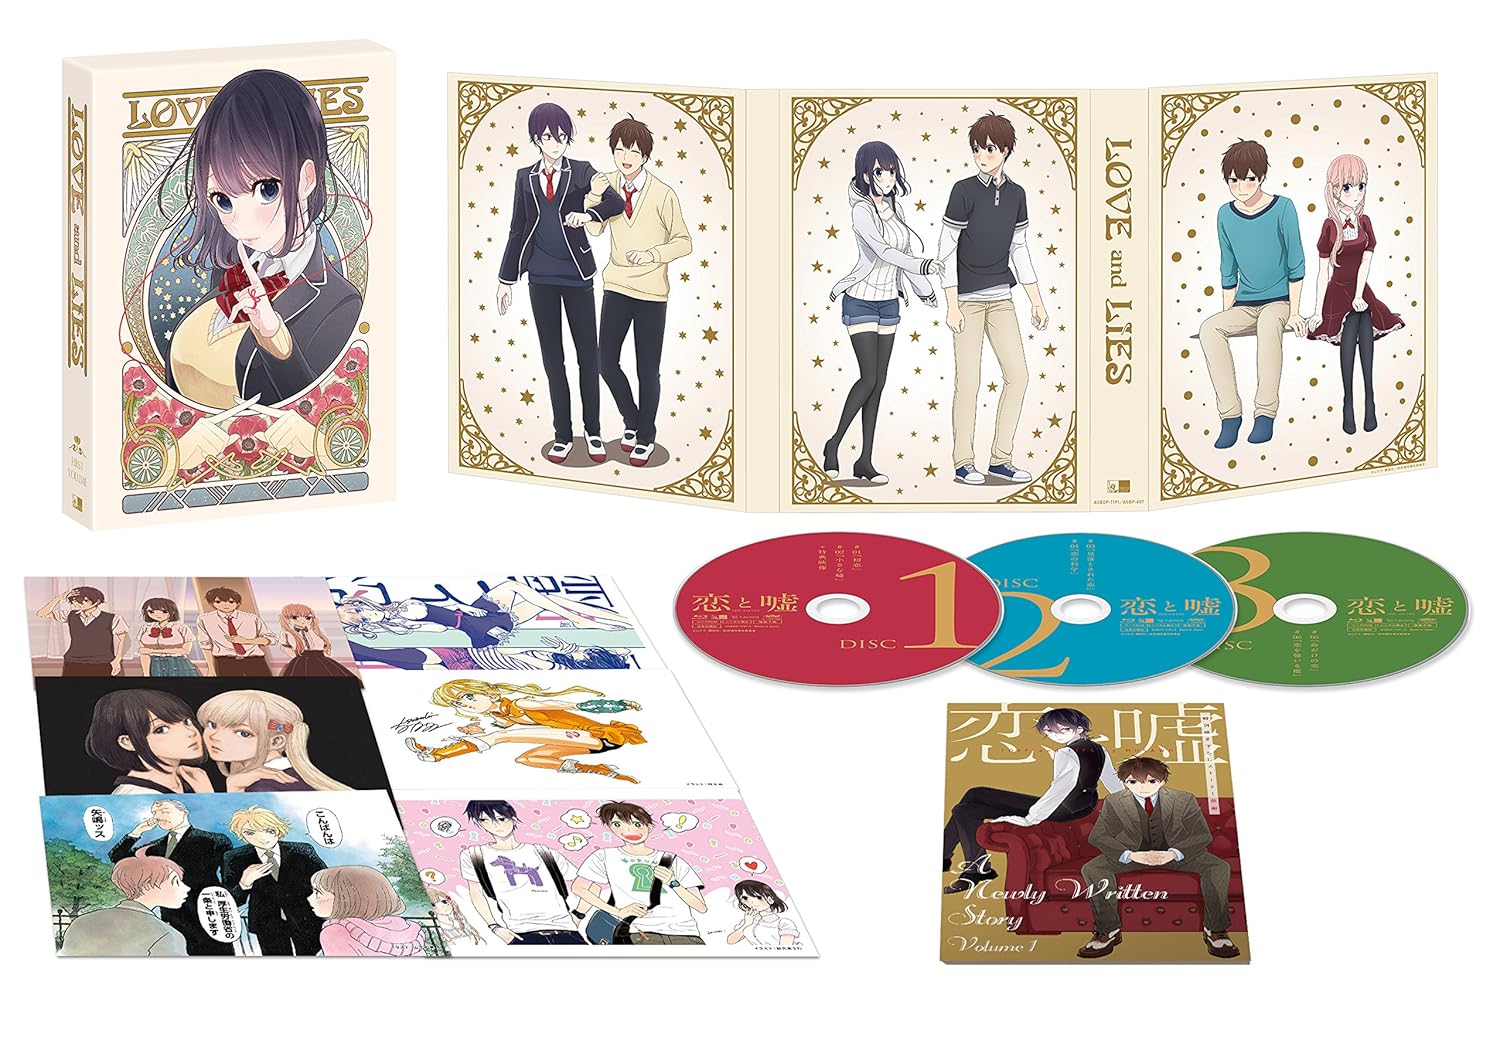 『恋と嘘』Blu-ray&DVD BOX上巻 発売情報